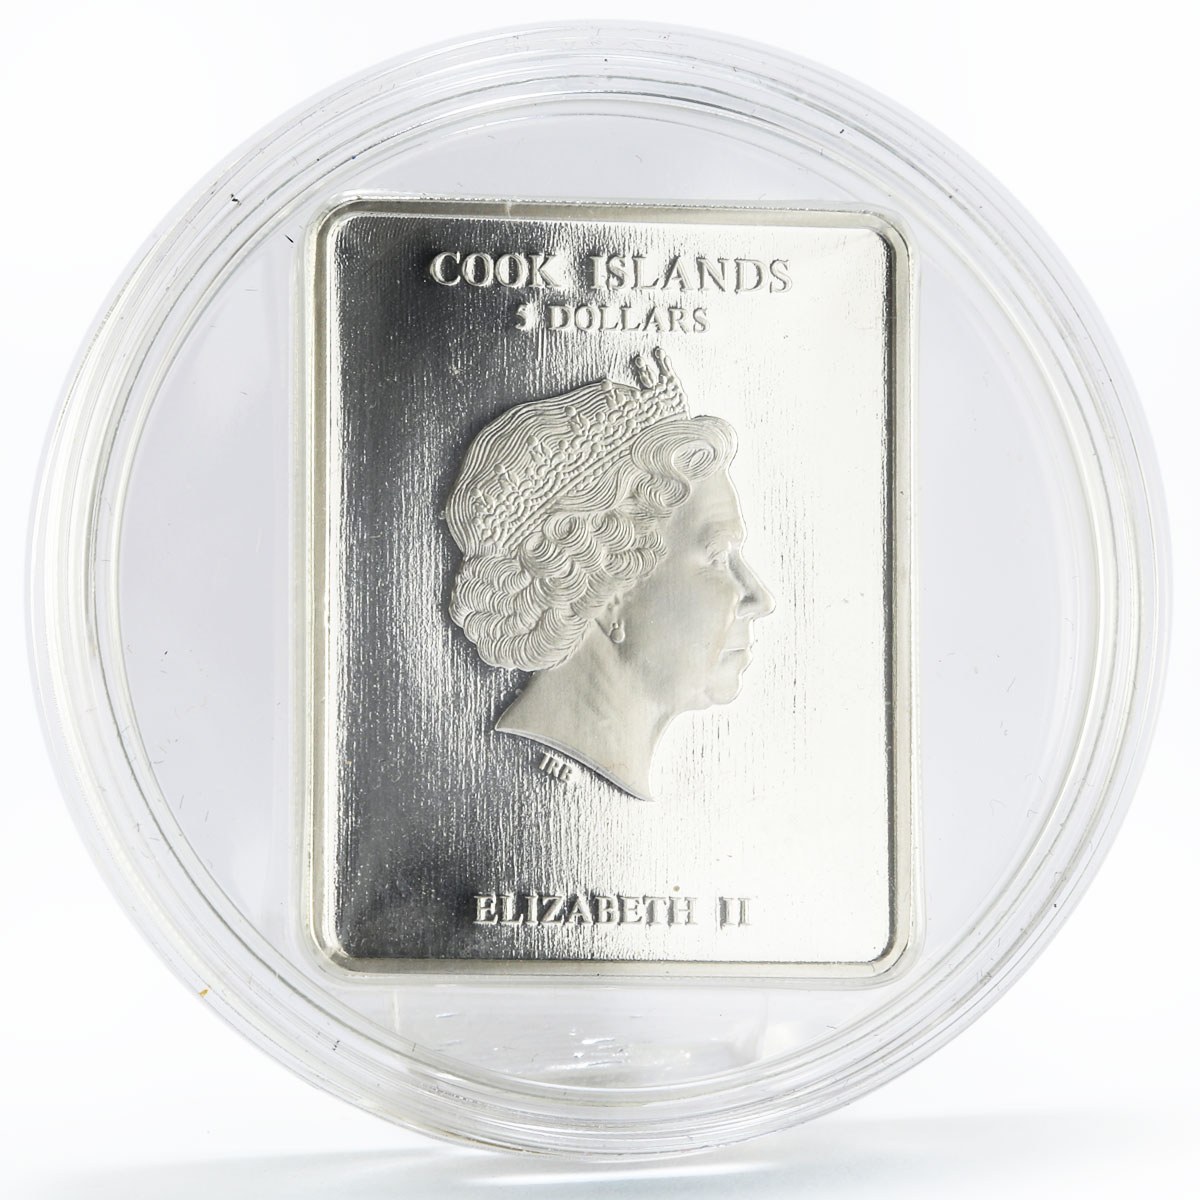 Cook Islands 5 dollars Patron Sains series St. Nicholas silver coin 2011